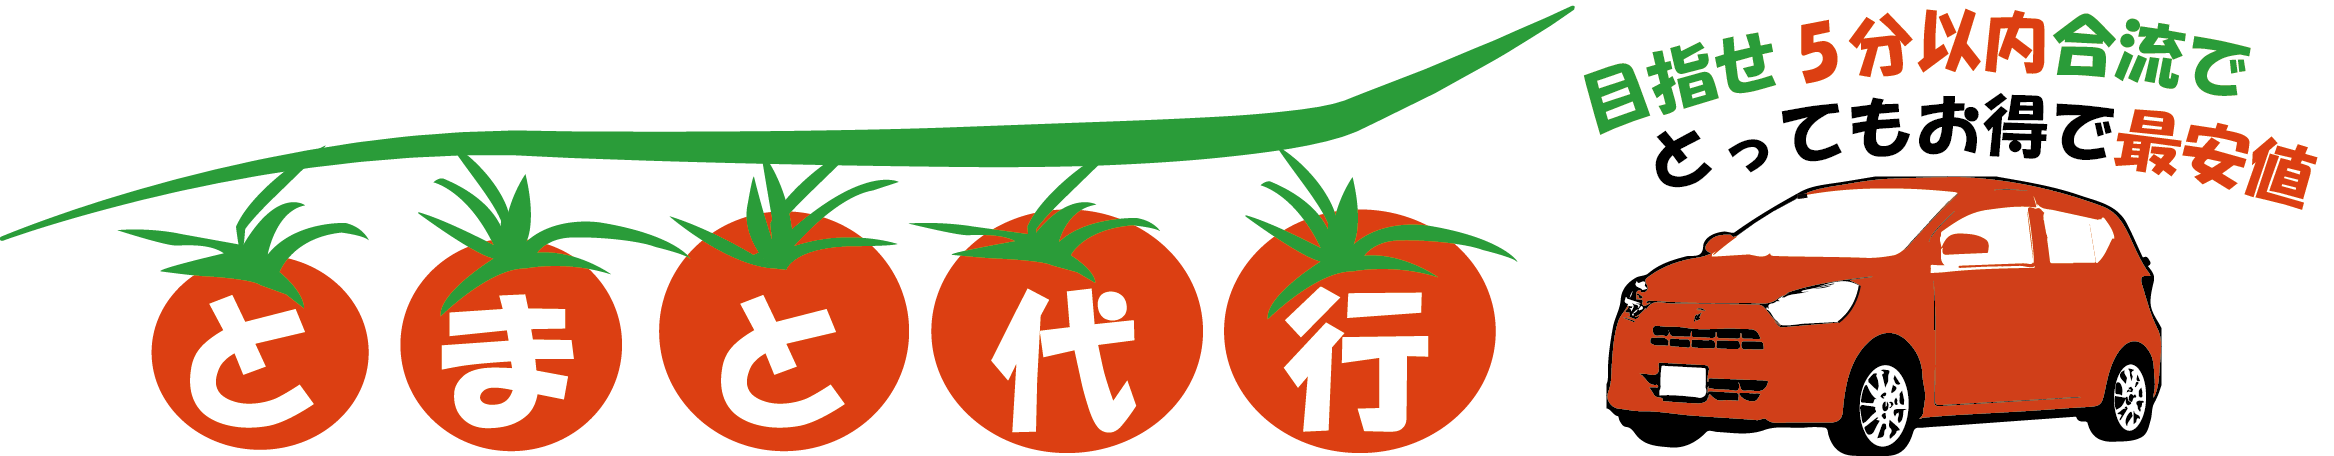 tomato_daikou